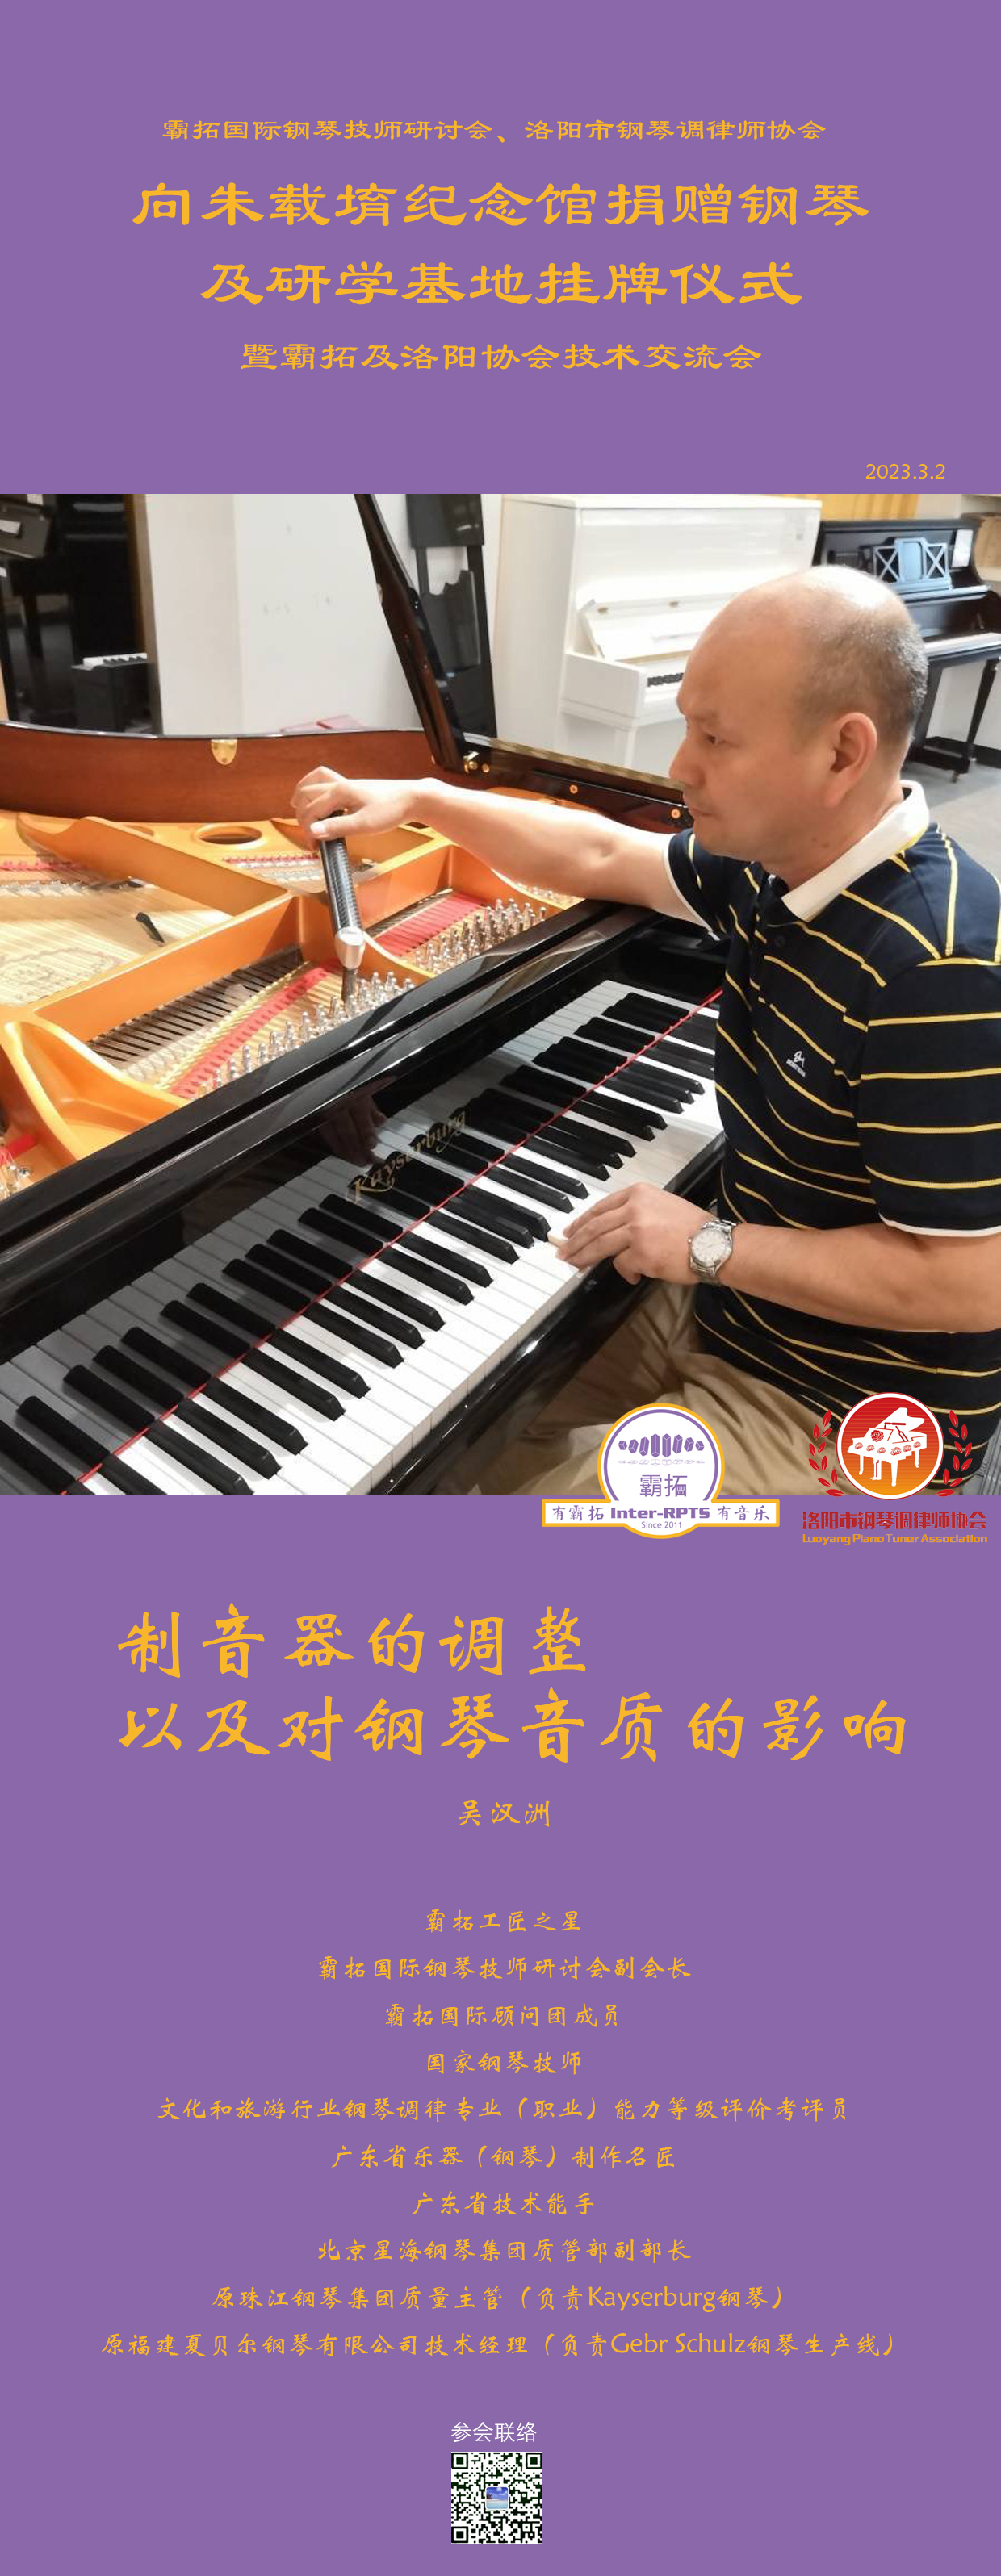 吴汉洲：制音器的调整以及对钢琴音质的影响.jpg